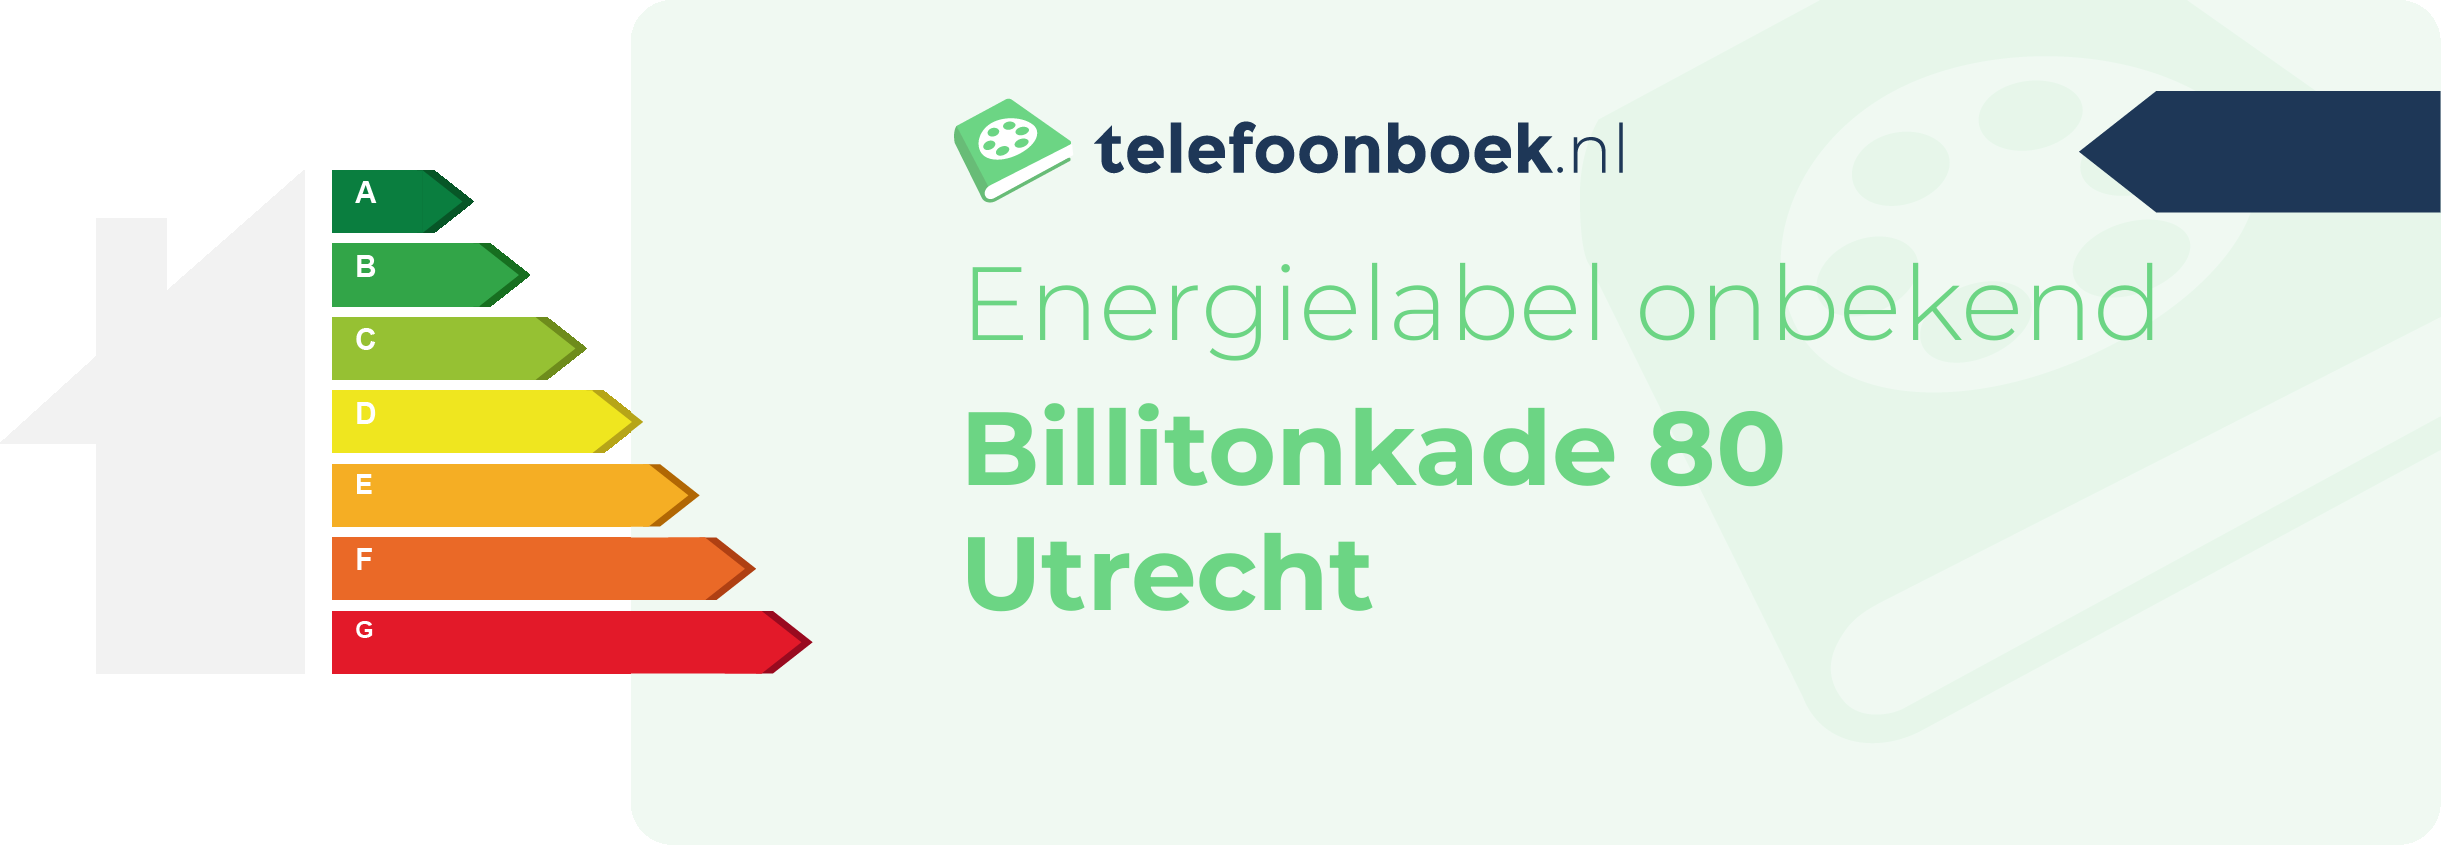 Energielabel Billitonkade 80 Utrecht